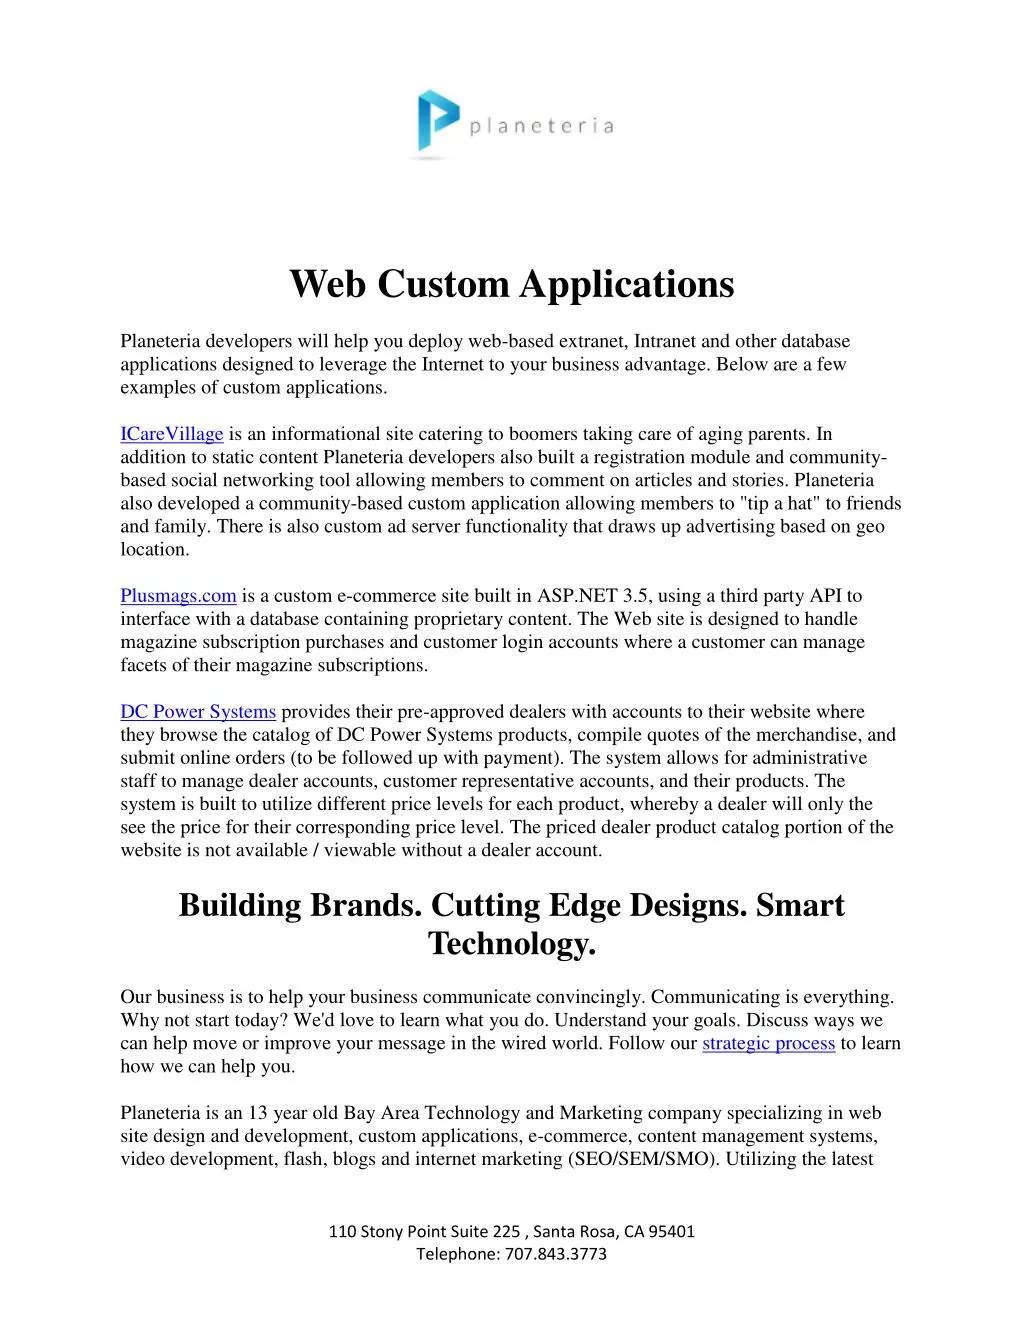 web custom applications